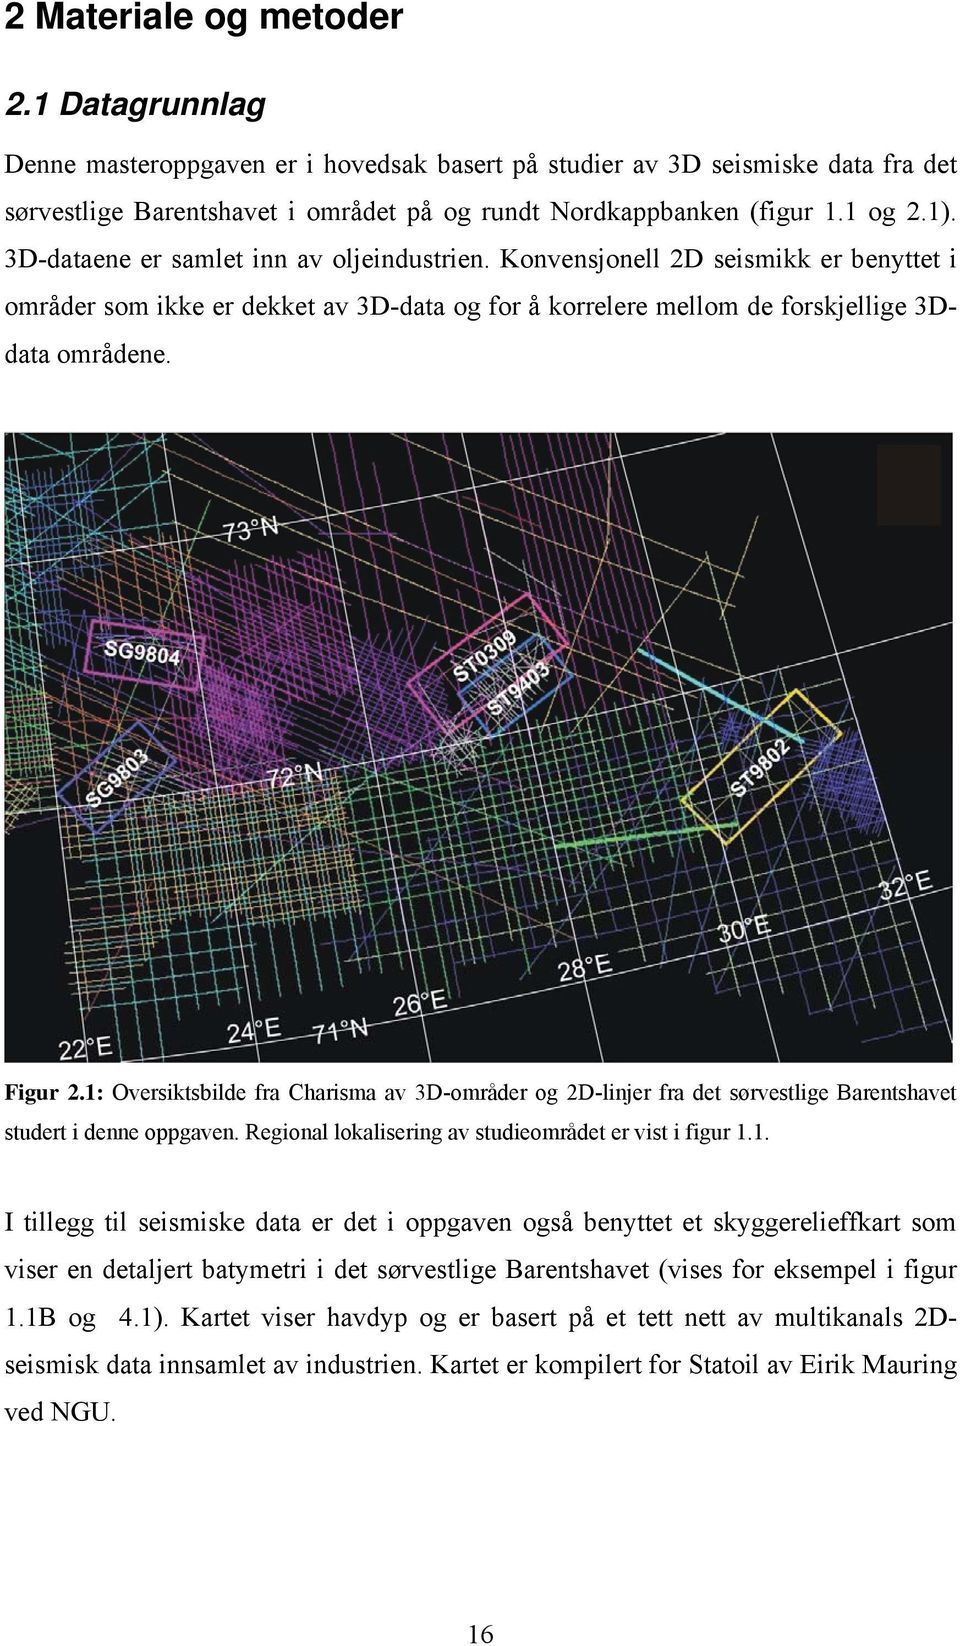 1: Oversiktsbilde fra Charisma av 3D-områder og 2D-linjer fra det sørvestlige Barentshavet studert i denne oppgaven. Regional lokalisering av studieområdet er vist i figur 1.1. I tillegg til seismiske data er det i oppgaven også benyttet et skyggerelieffkart som viser en detaljert batymetri i det sørvestlige Barentshavet (vises for eksempel i figur 1.